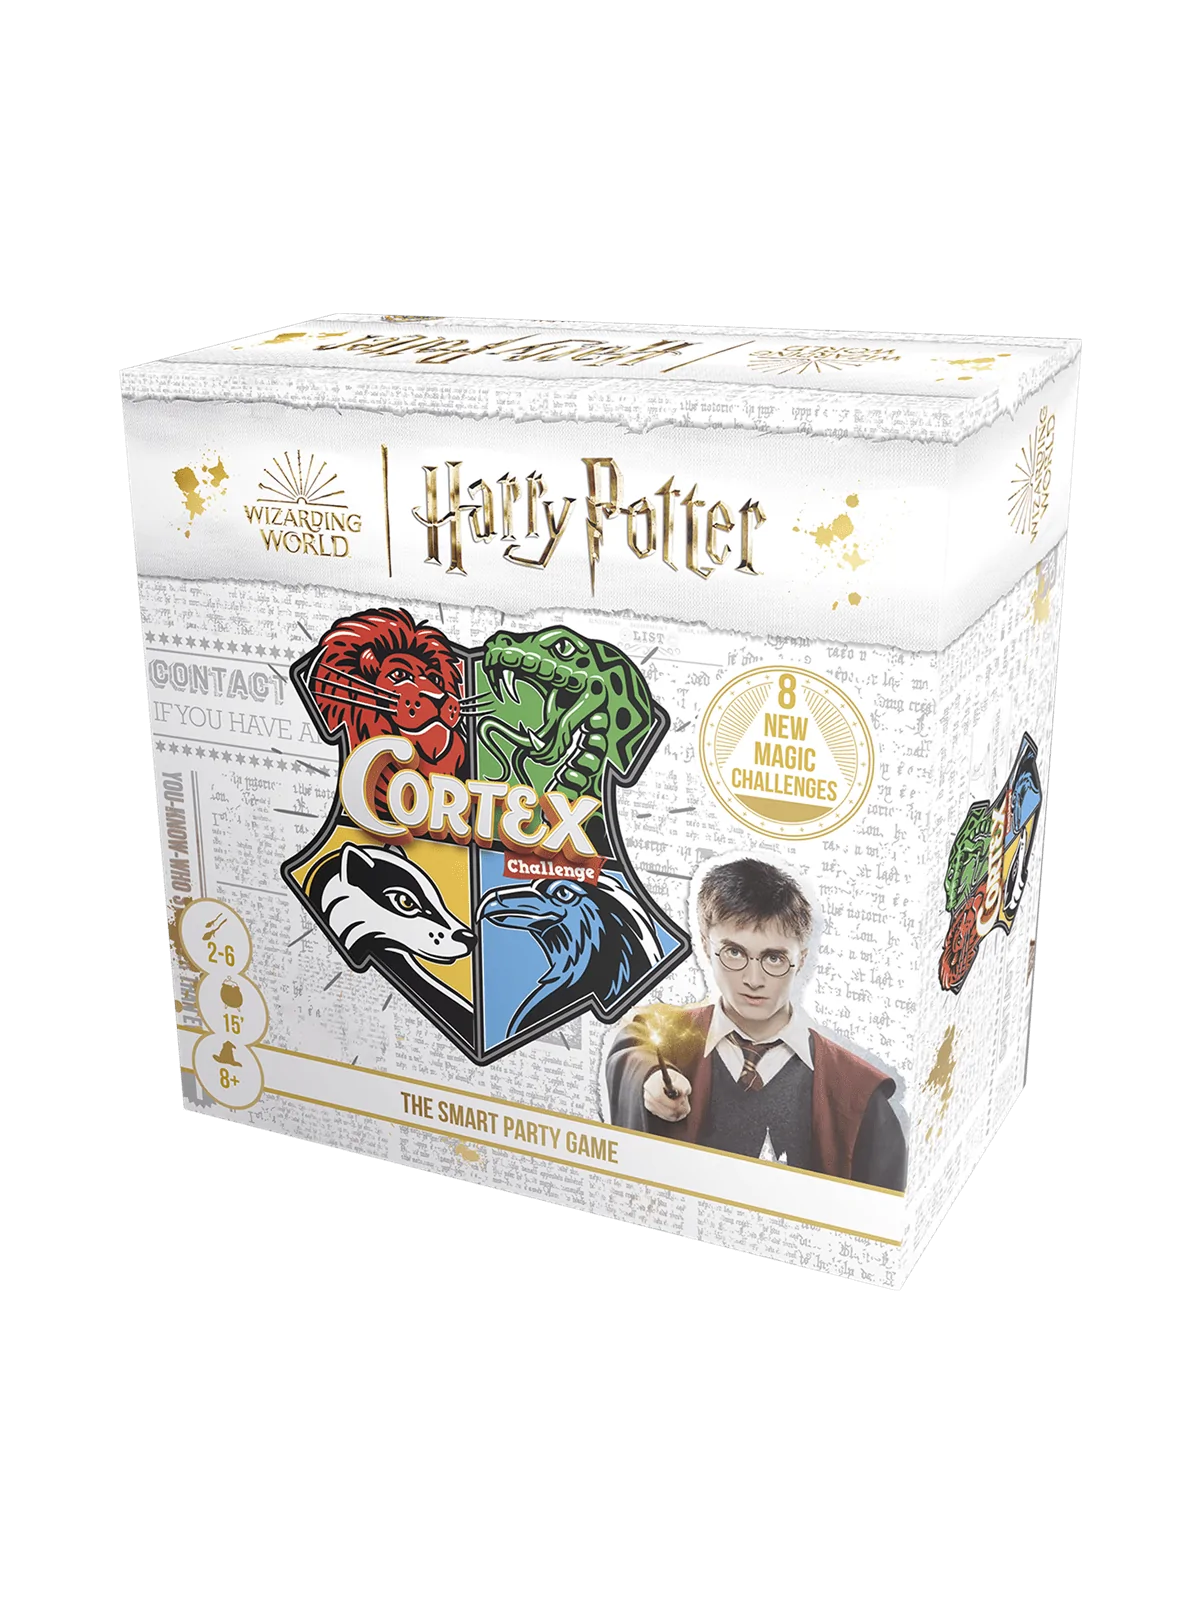 Comprar Cortex Harry Potter barato al mejor precio 15,29 € de Zygomati